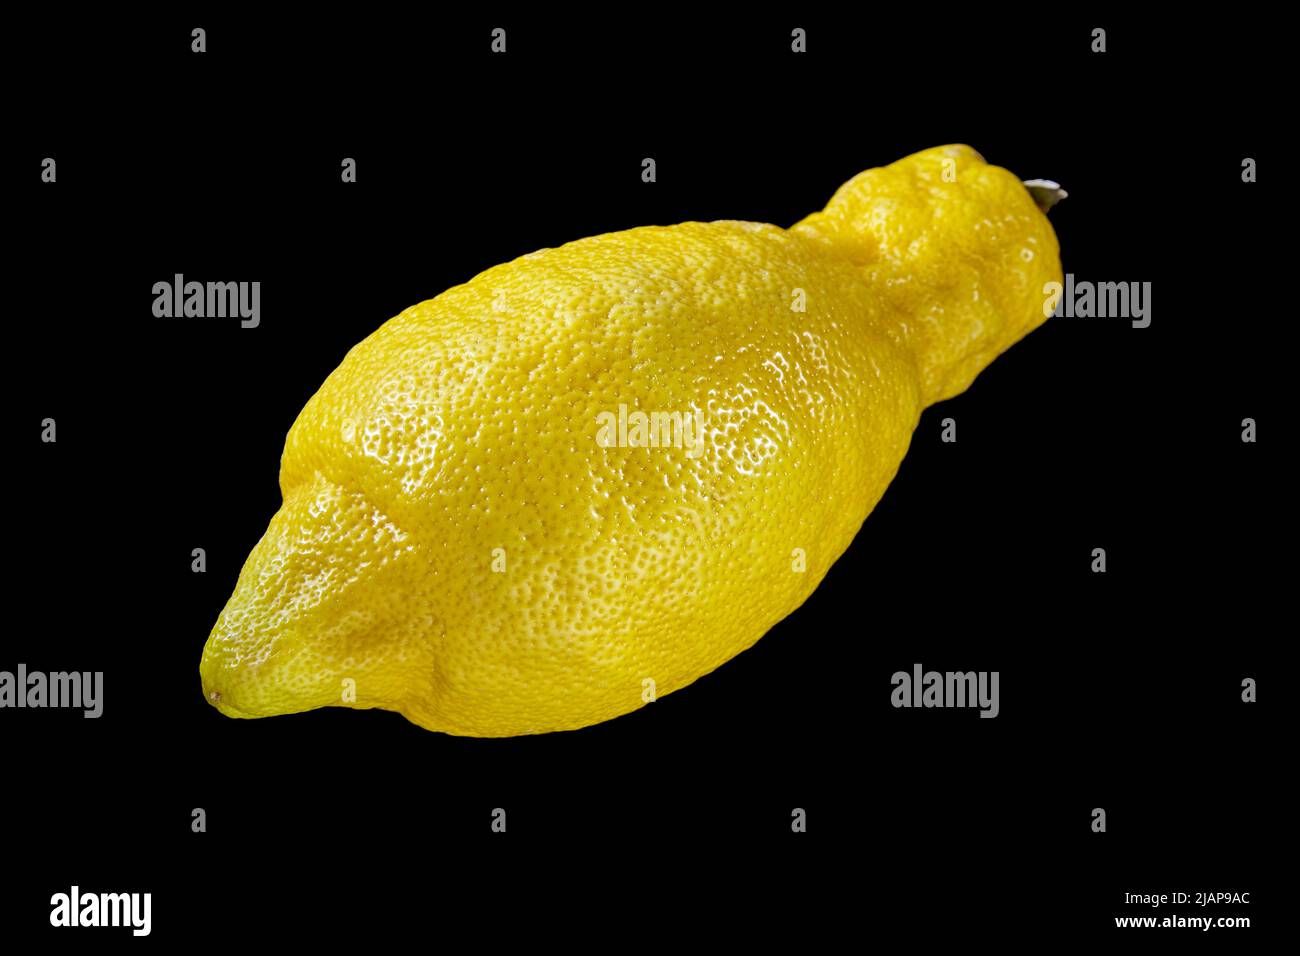 Magnifique citron génétiquement modifié sur fond noir. Applications pratiques du génie génétique Banque D'Images